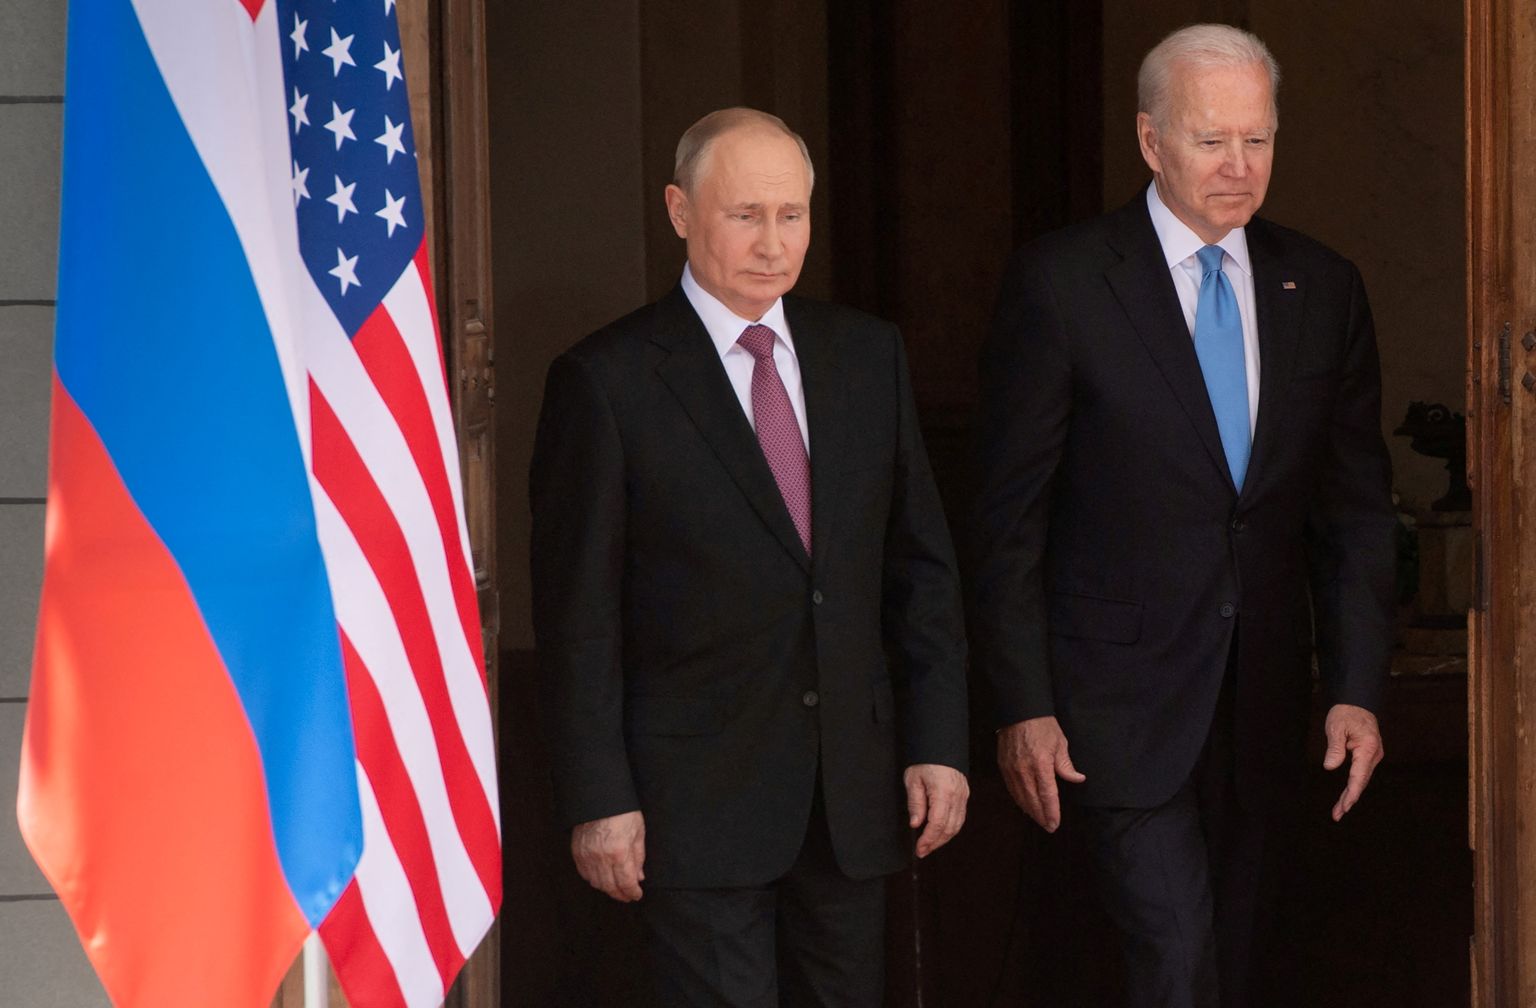 В июне 2021 года президент США Джо Байден, встречаясь с Путиным в Швейцарии, еще не знал, что президент РФ на самом деле уже готовился напасть на Украину. В 2021 году стягивание войск ВС РФ к границам Украины не привело к вторжению.